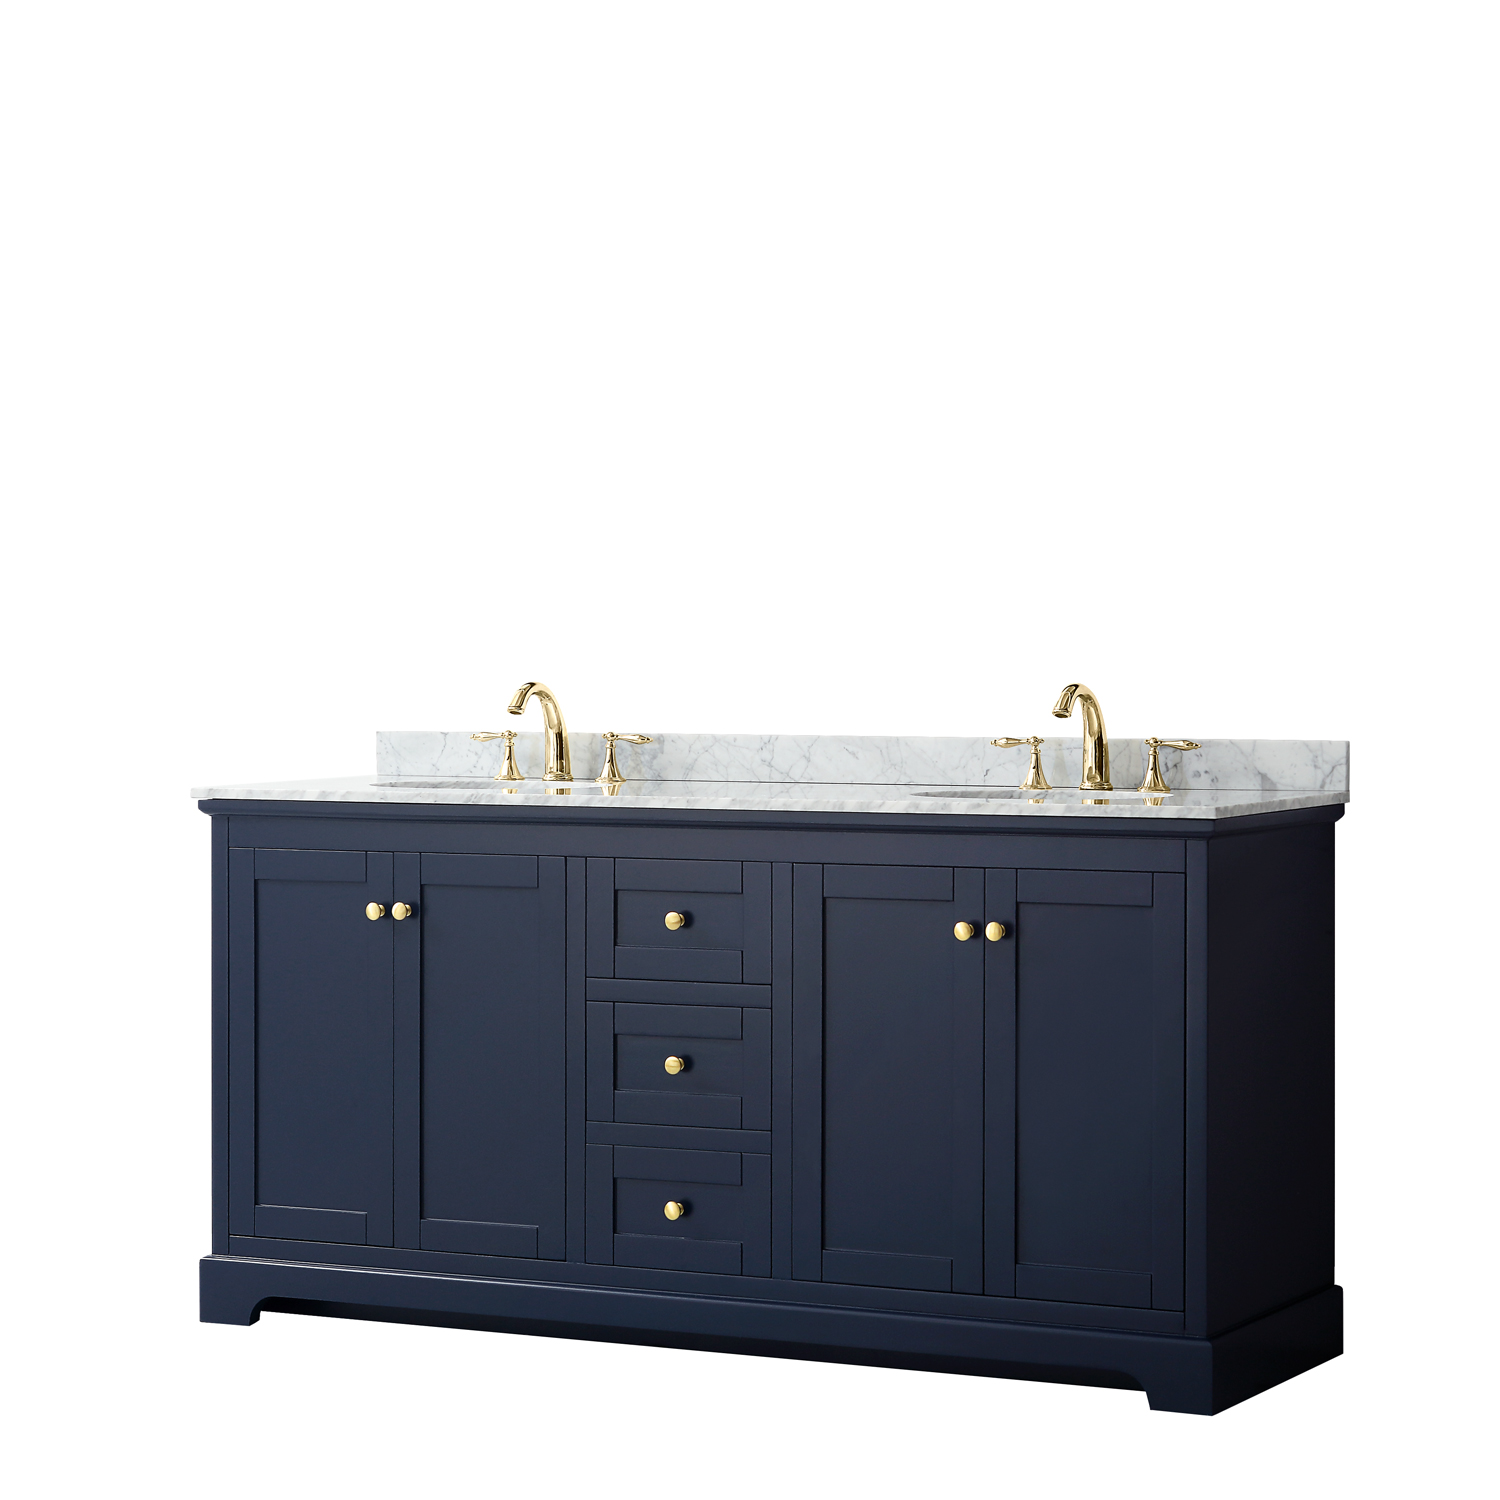 72" Double Bathroom Vanity in Dark Blue, No Countertop, No Sinks, and No Mirror